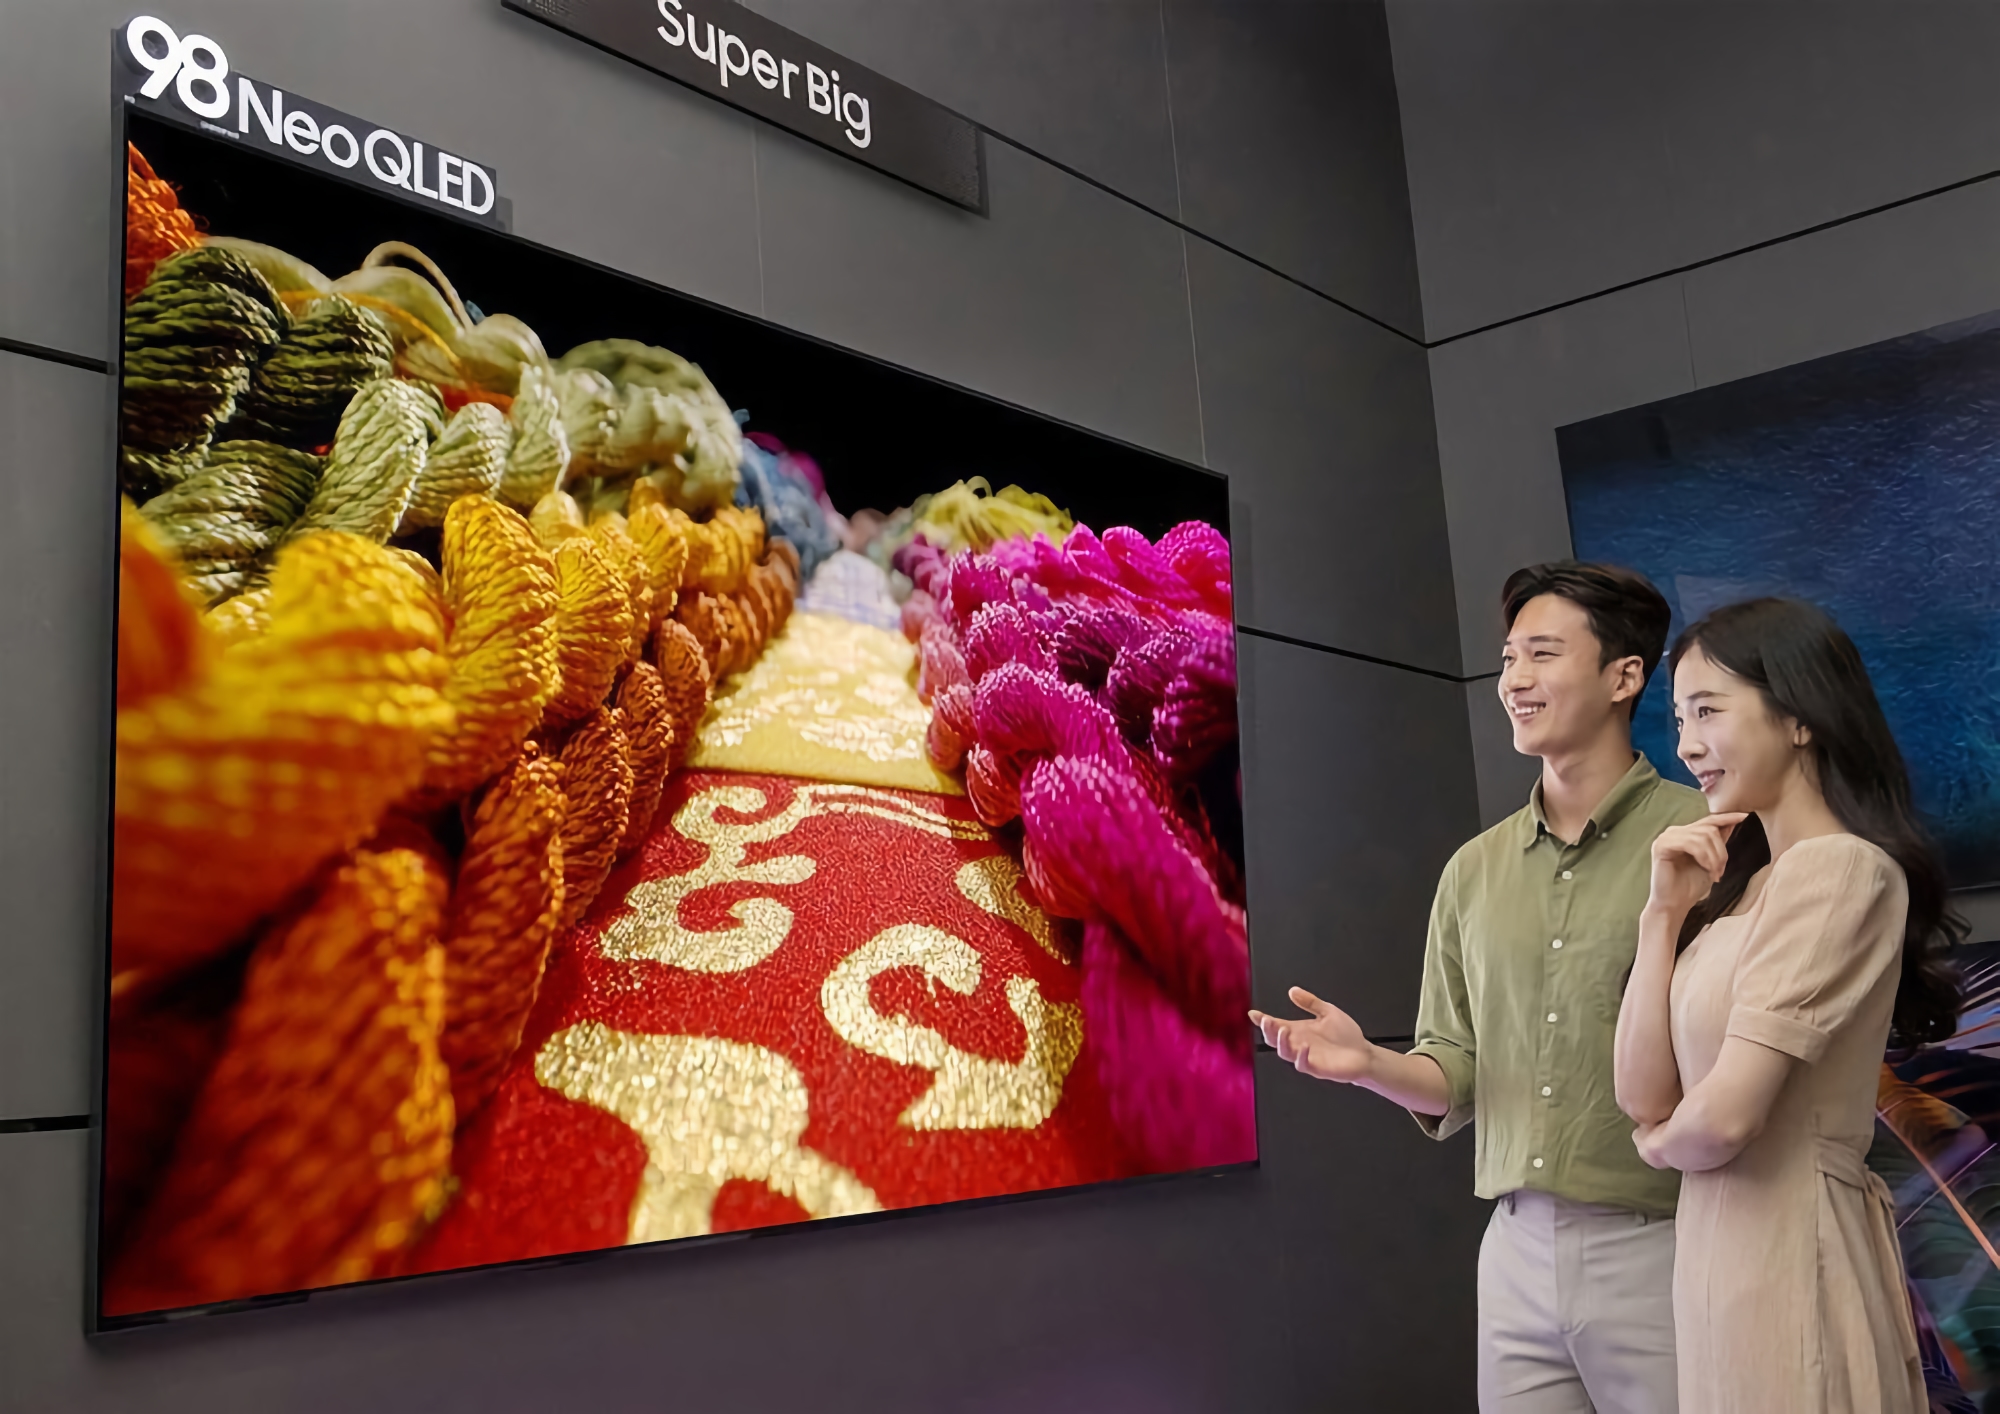 Samsung presentó un televisor inteligente QN100B Neo QLED TV de 98 pulgadas con pantalla 4K a 120 Hz y 20 mm de grosor por 32.000 dólares